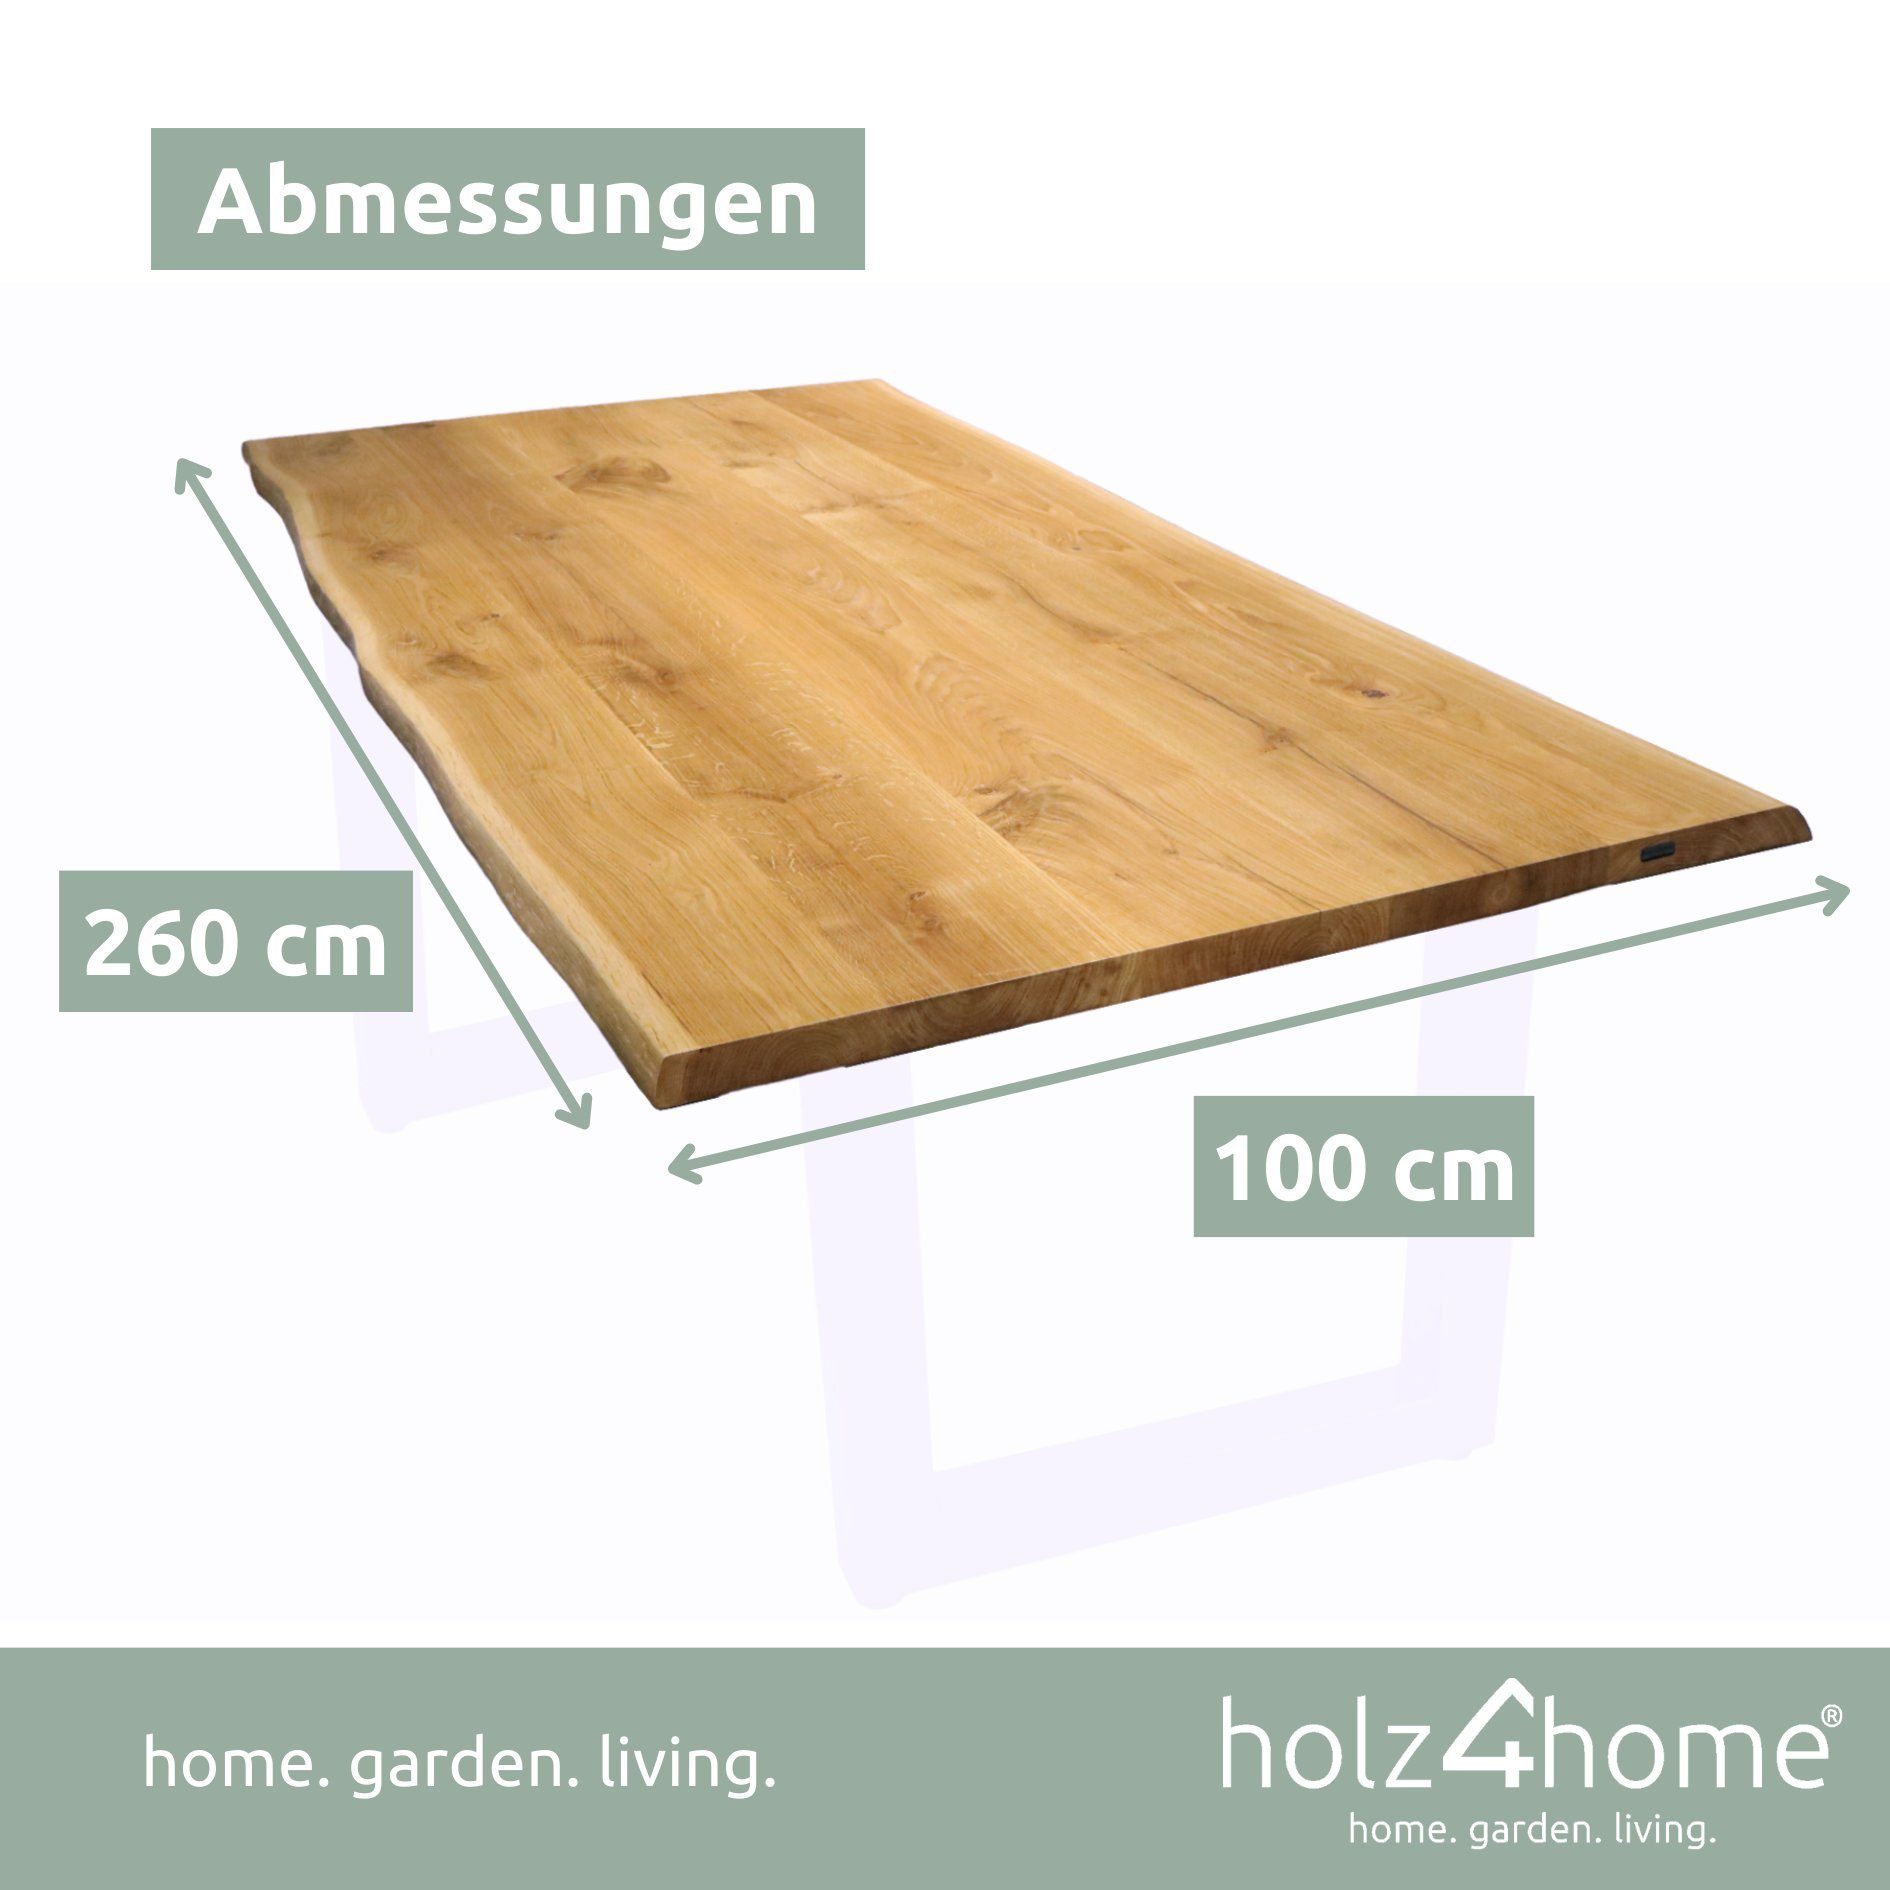 260cm holz4home aus Tischplatte Eiche Esstischplatte mit 100cm massiver Baumkante x